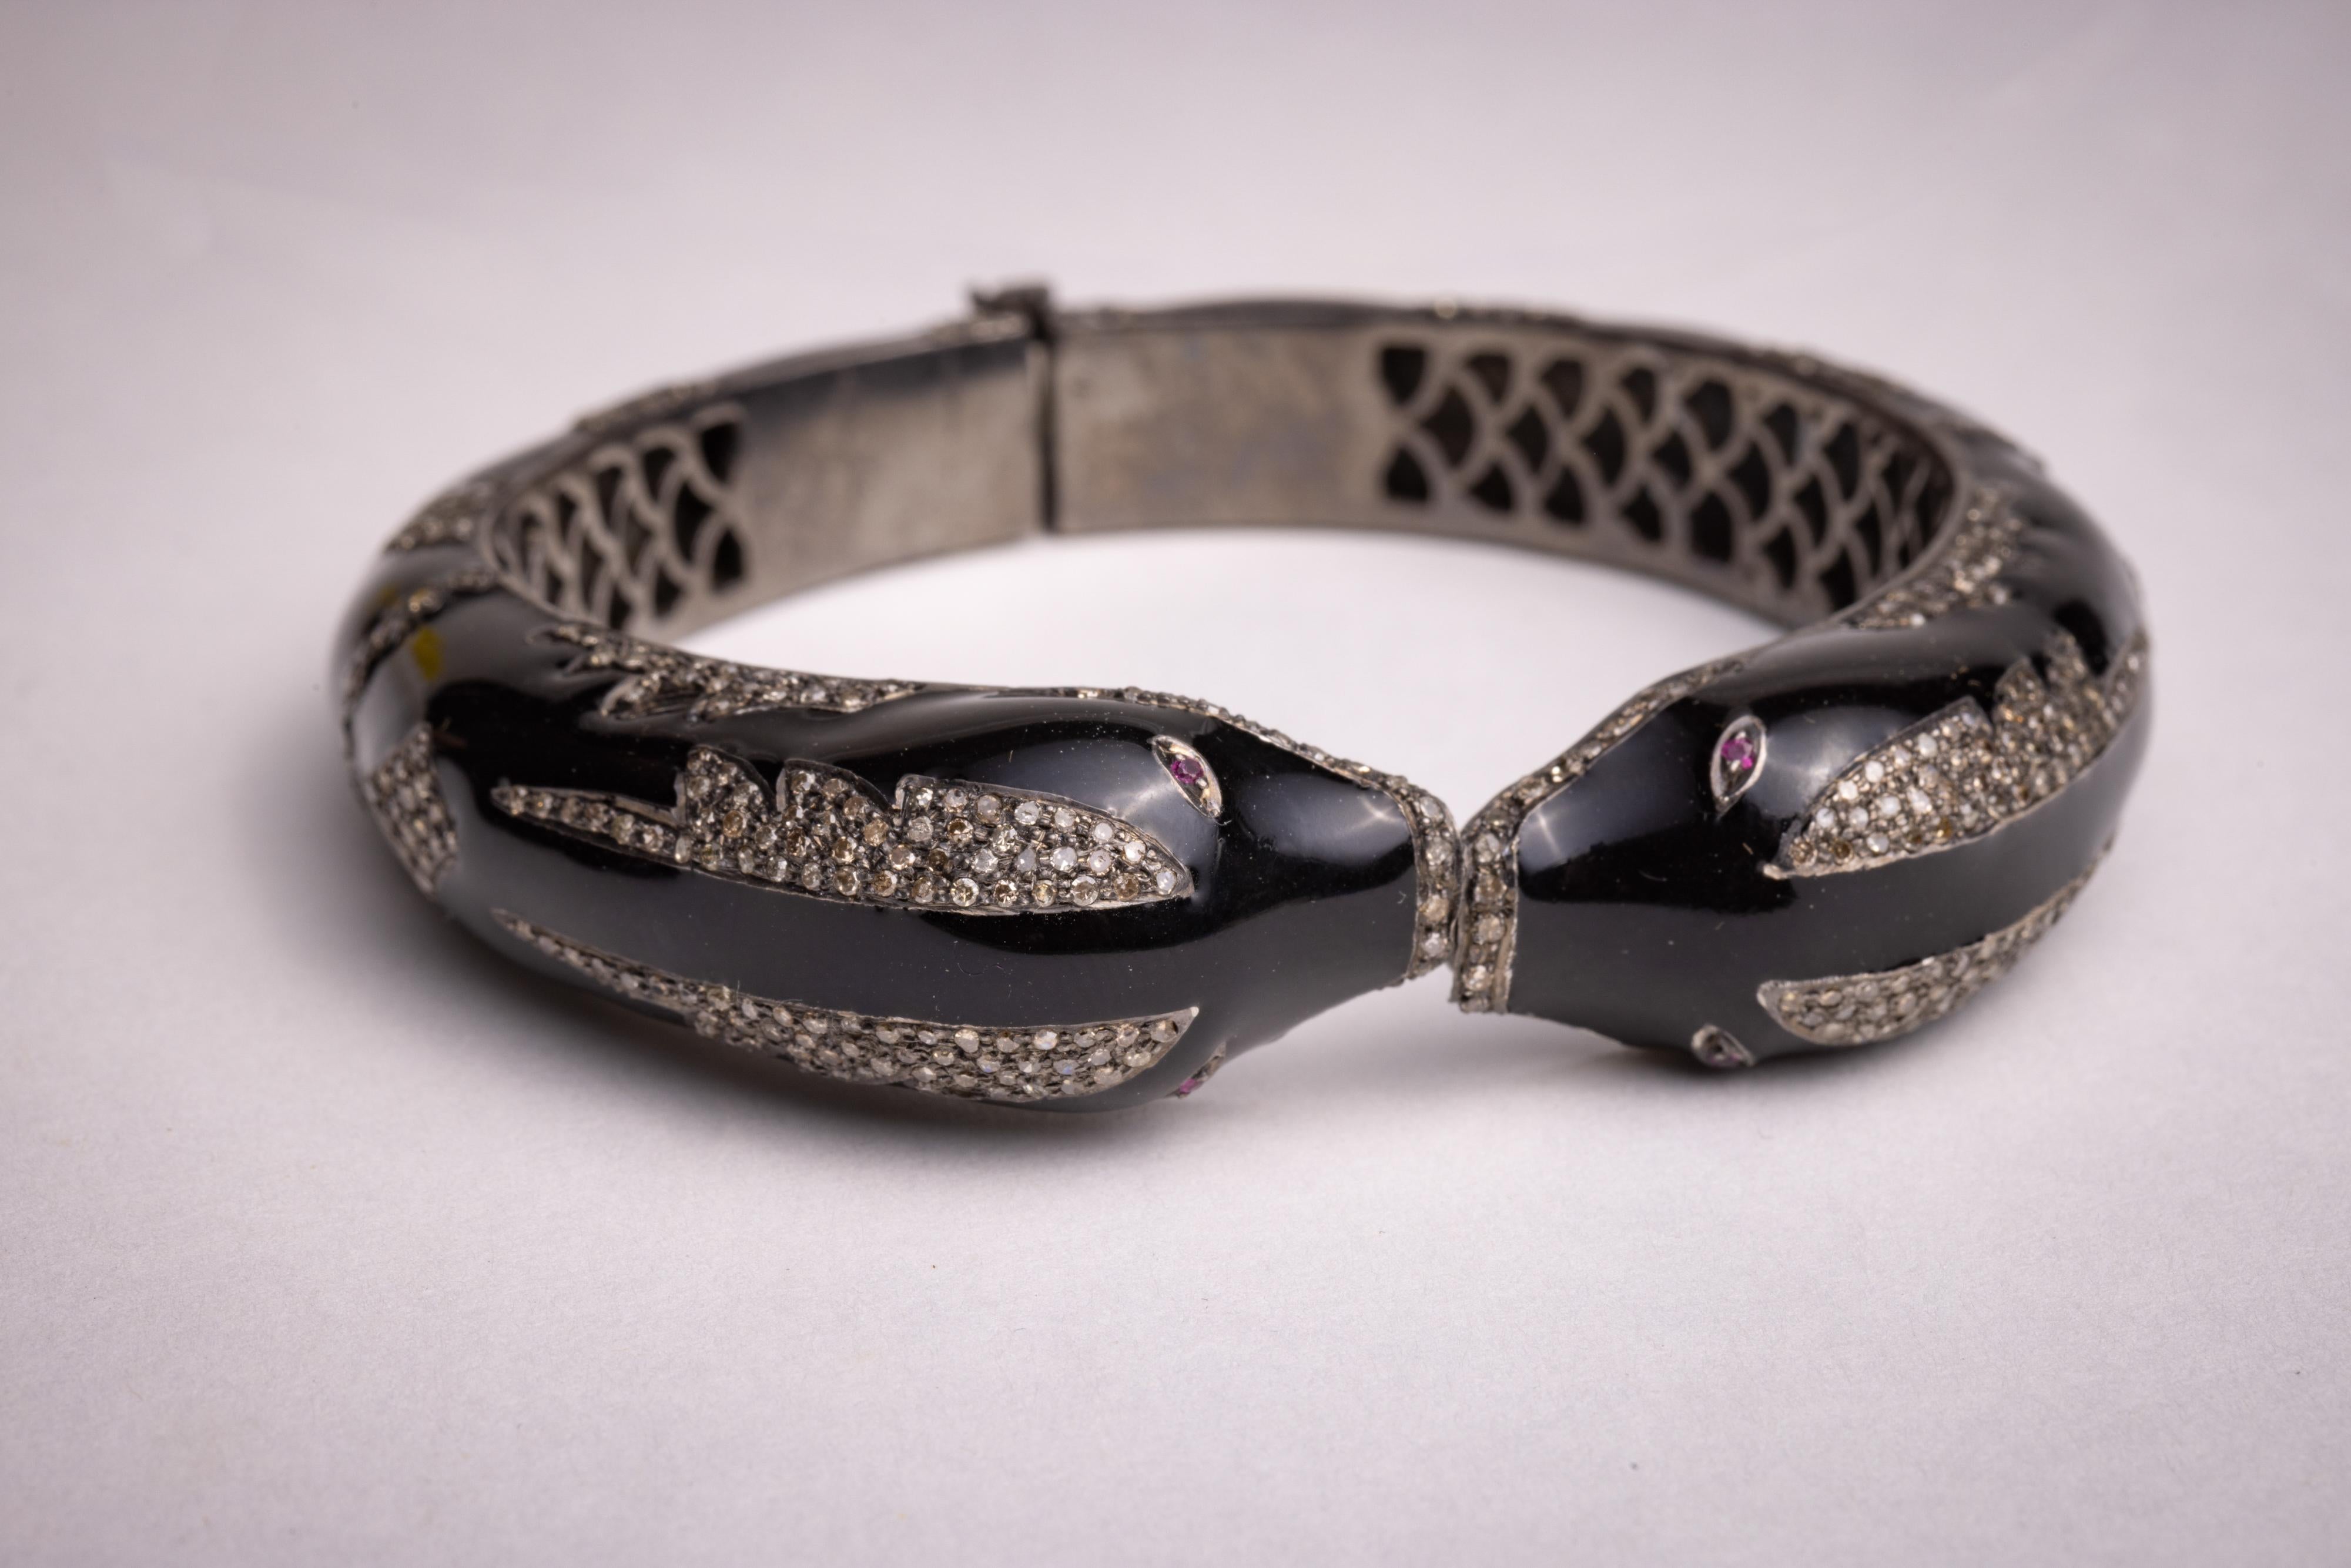 Ein ungewöhnliches und außergewöhnliches Manschetten-Schlangenarmband.  Schwarze Emaille mit runden Diamanten im Brillantschliff in einer Pave`-Fassung. Facettierte rubinrote Augen.  Klappbare Rückseite für einfaches An- und Ausziehen.  Eine leicht